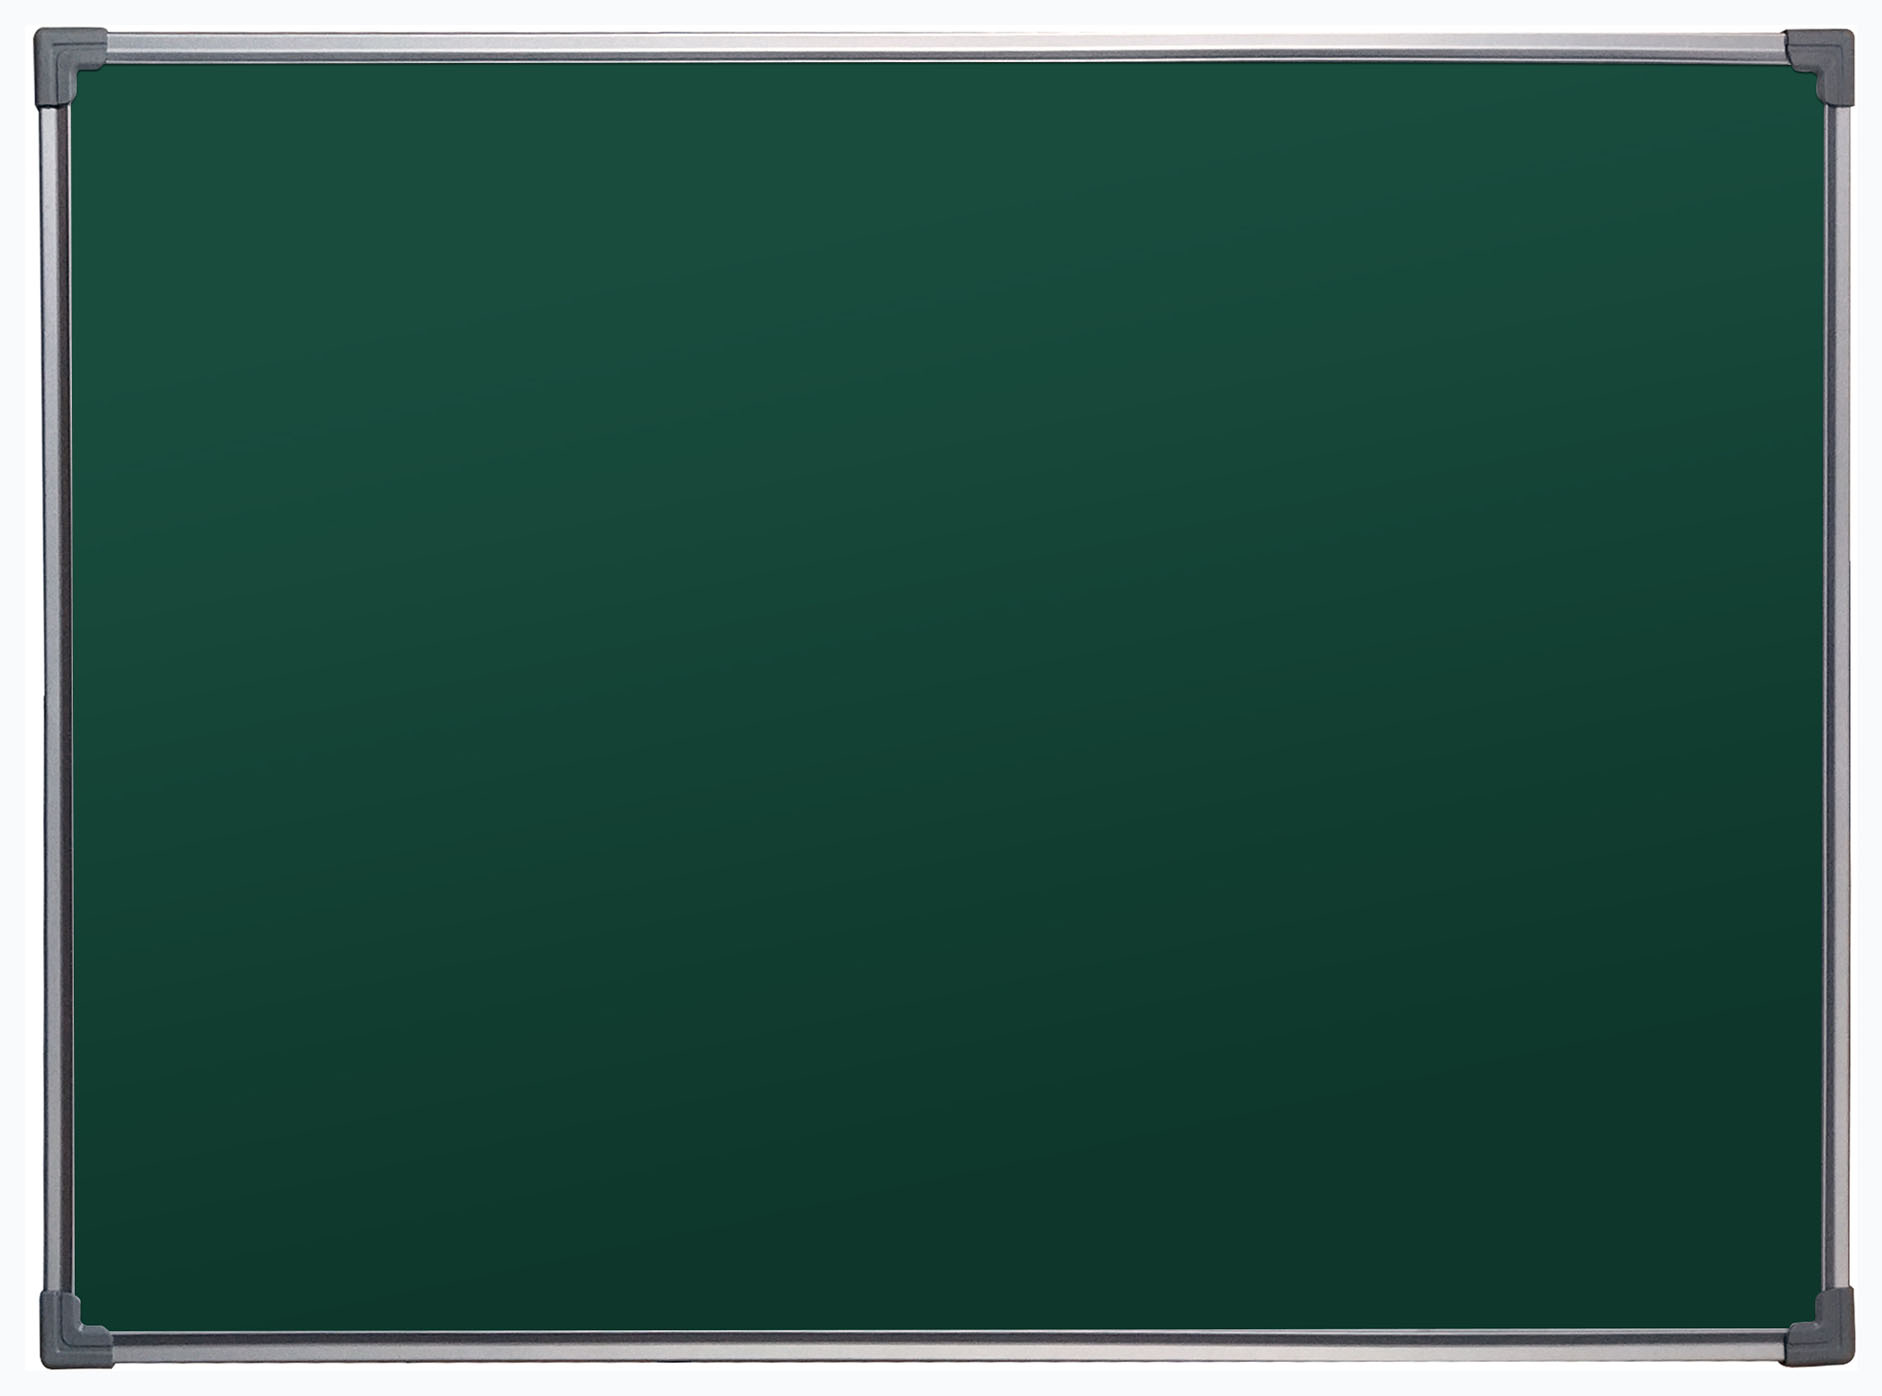 Демонстрационная доска BoardSYS Ecolite магнитно-маркерная, 60x90см, лак (зеленый)/алюминий (серый) (10МСС60)